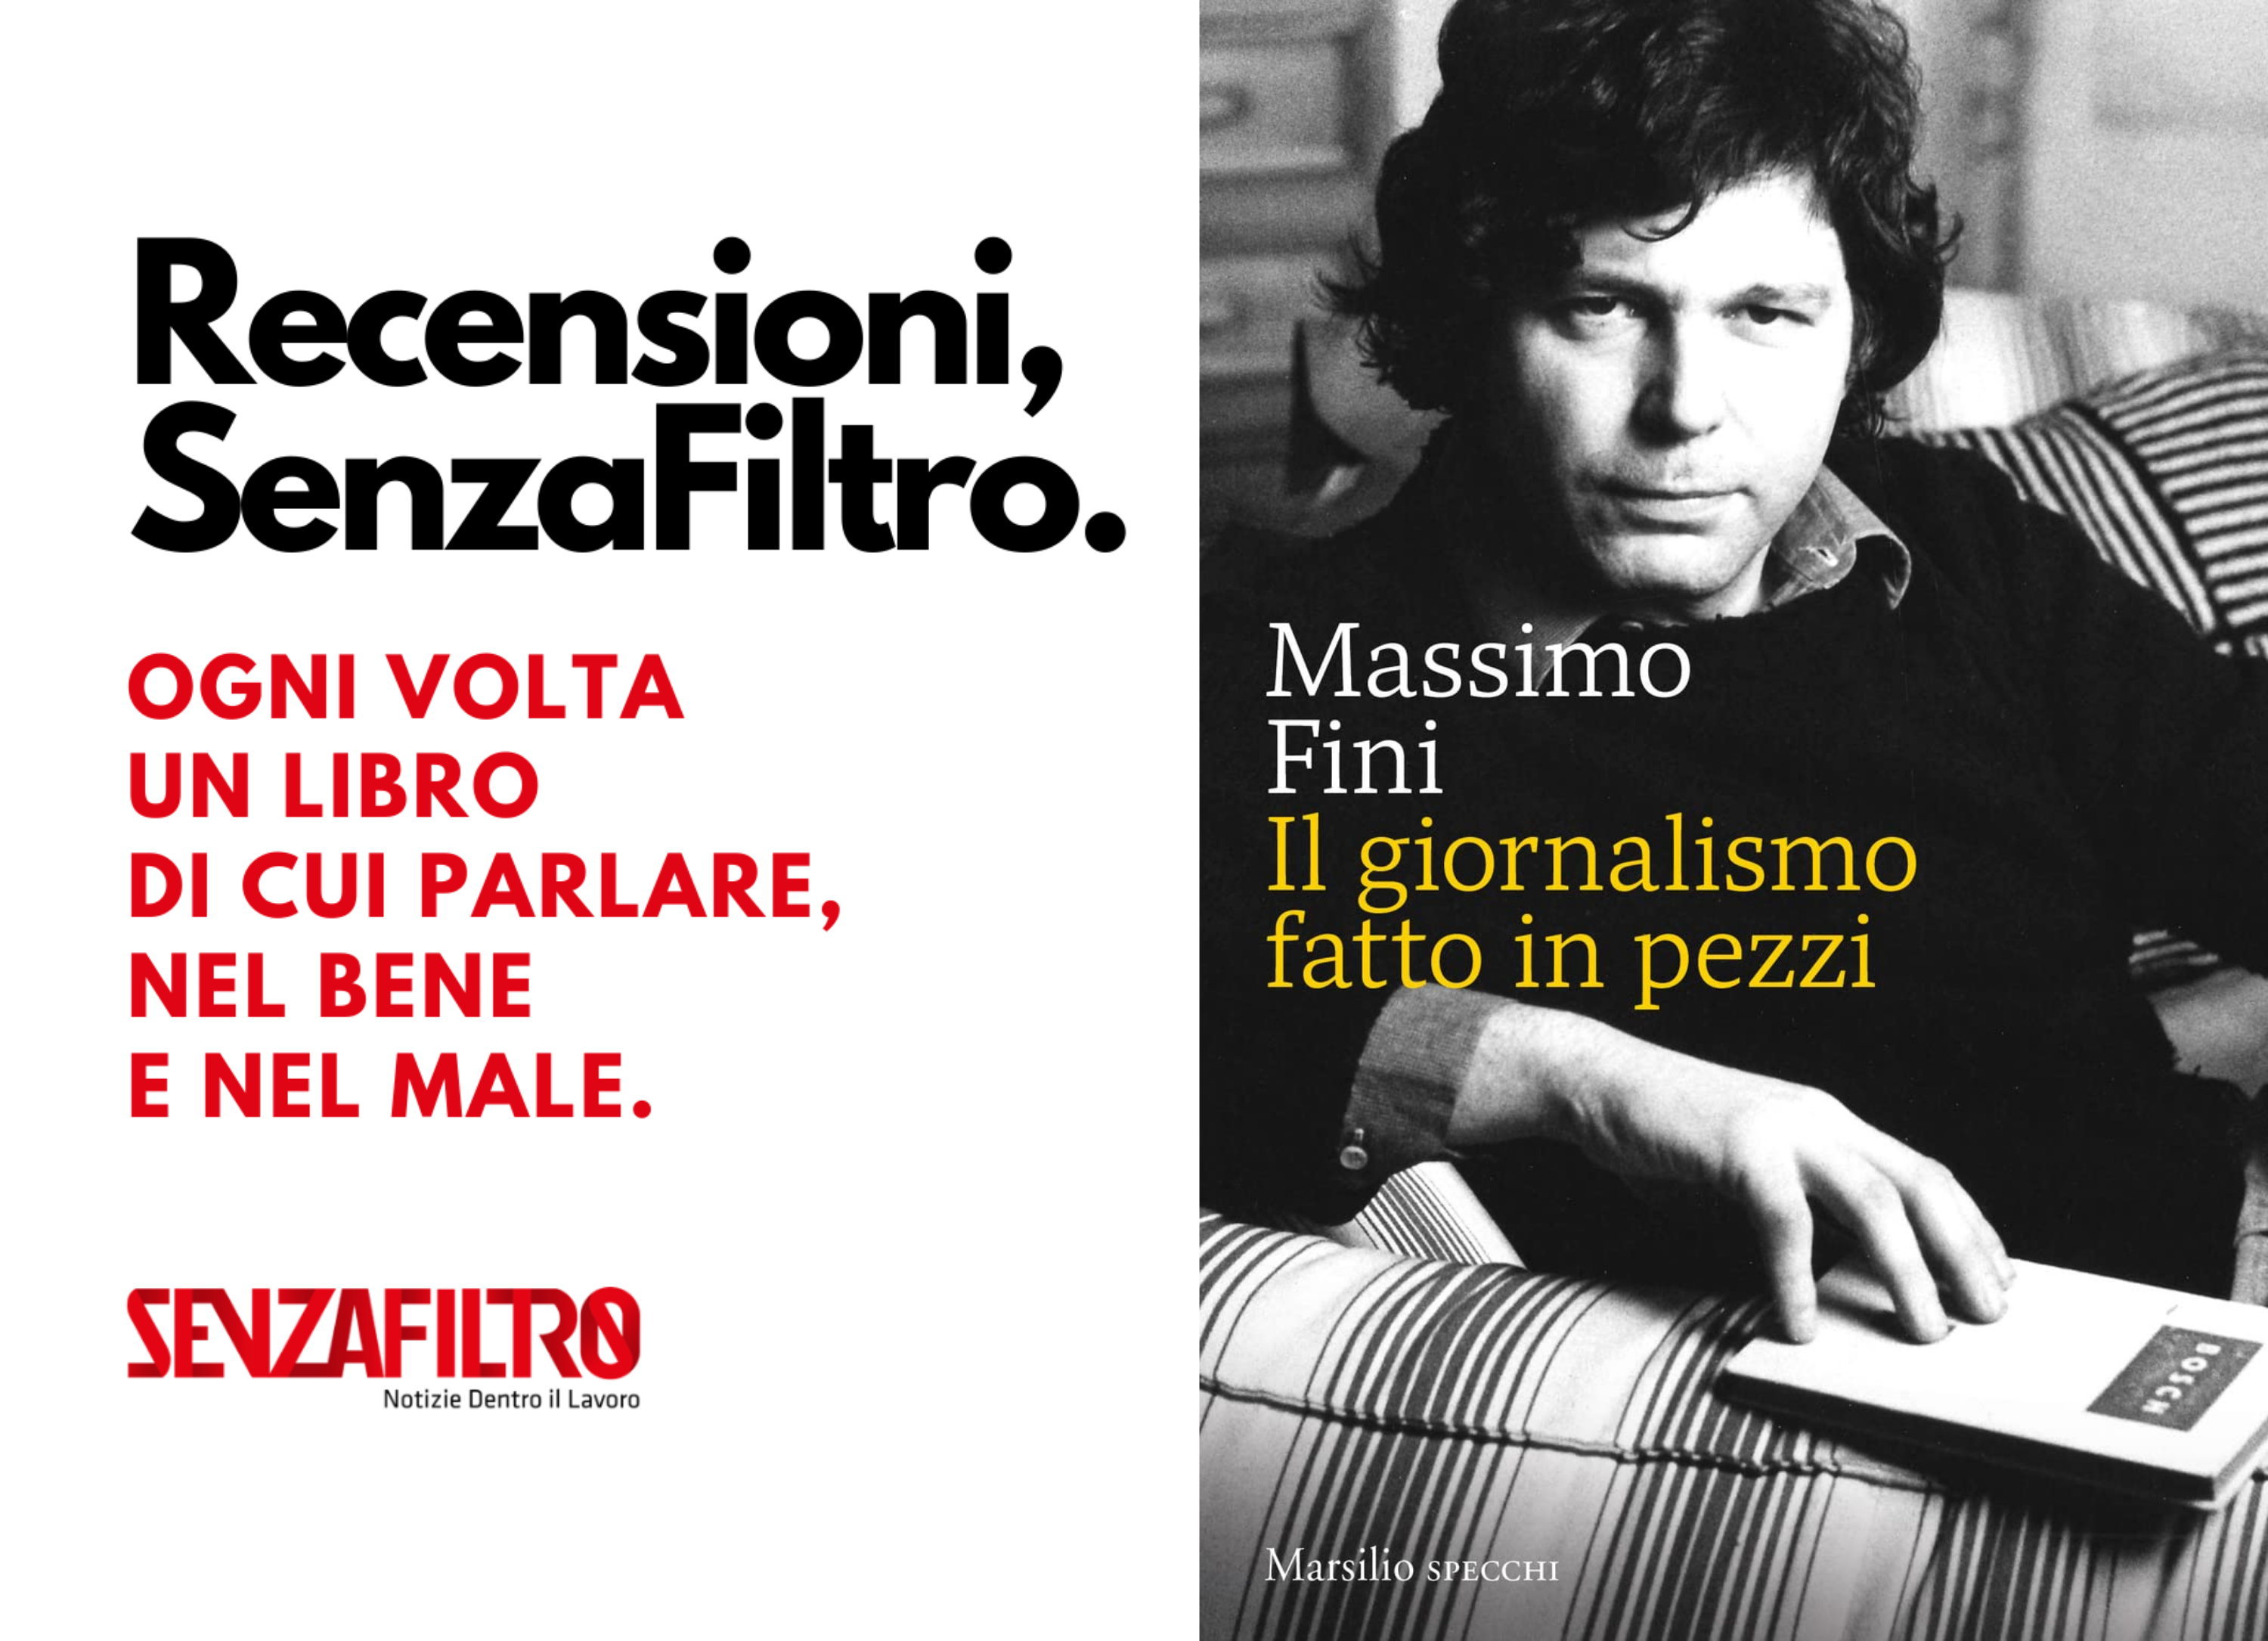 Massimo Fini: “Il giornalismo è a pezzi perché non esce più dalle redazioni”